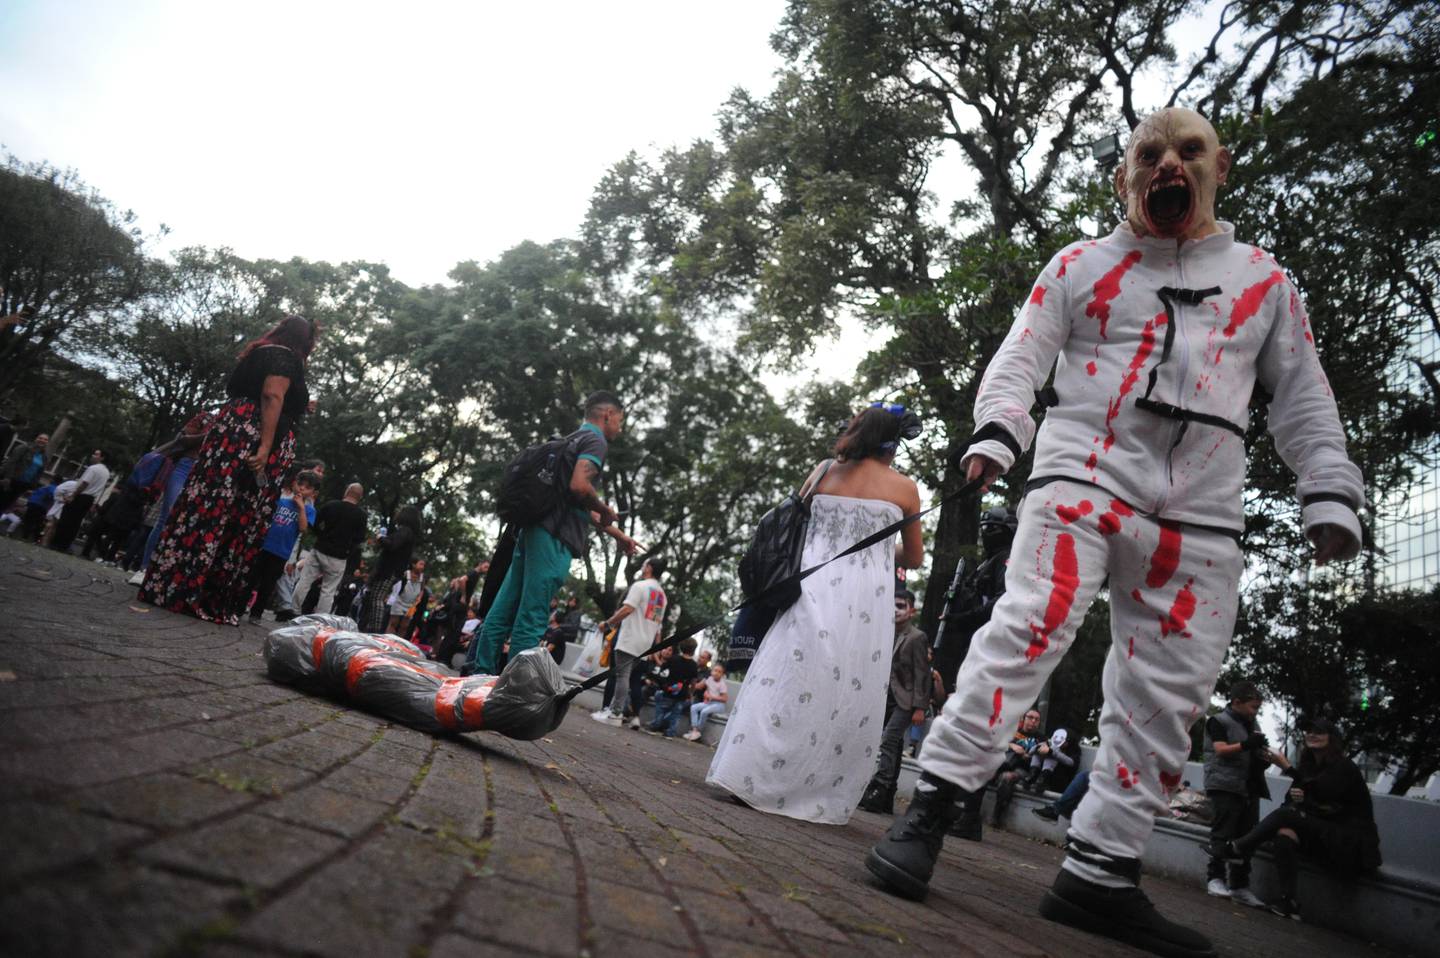 28\10\23 San José,edición N#15 del Zombie Fest. una horda de ‘muertos vivientes’ saldrán del parque Morarán; Zombie Parade crea  un espacio para divertirse y recrearse en familia, bajo la temática zombie. Fotos: Jorge Navarro para La Nación.